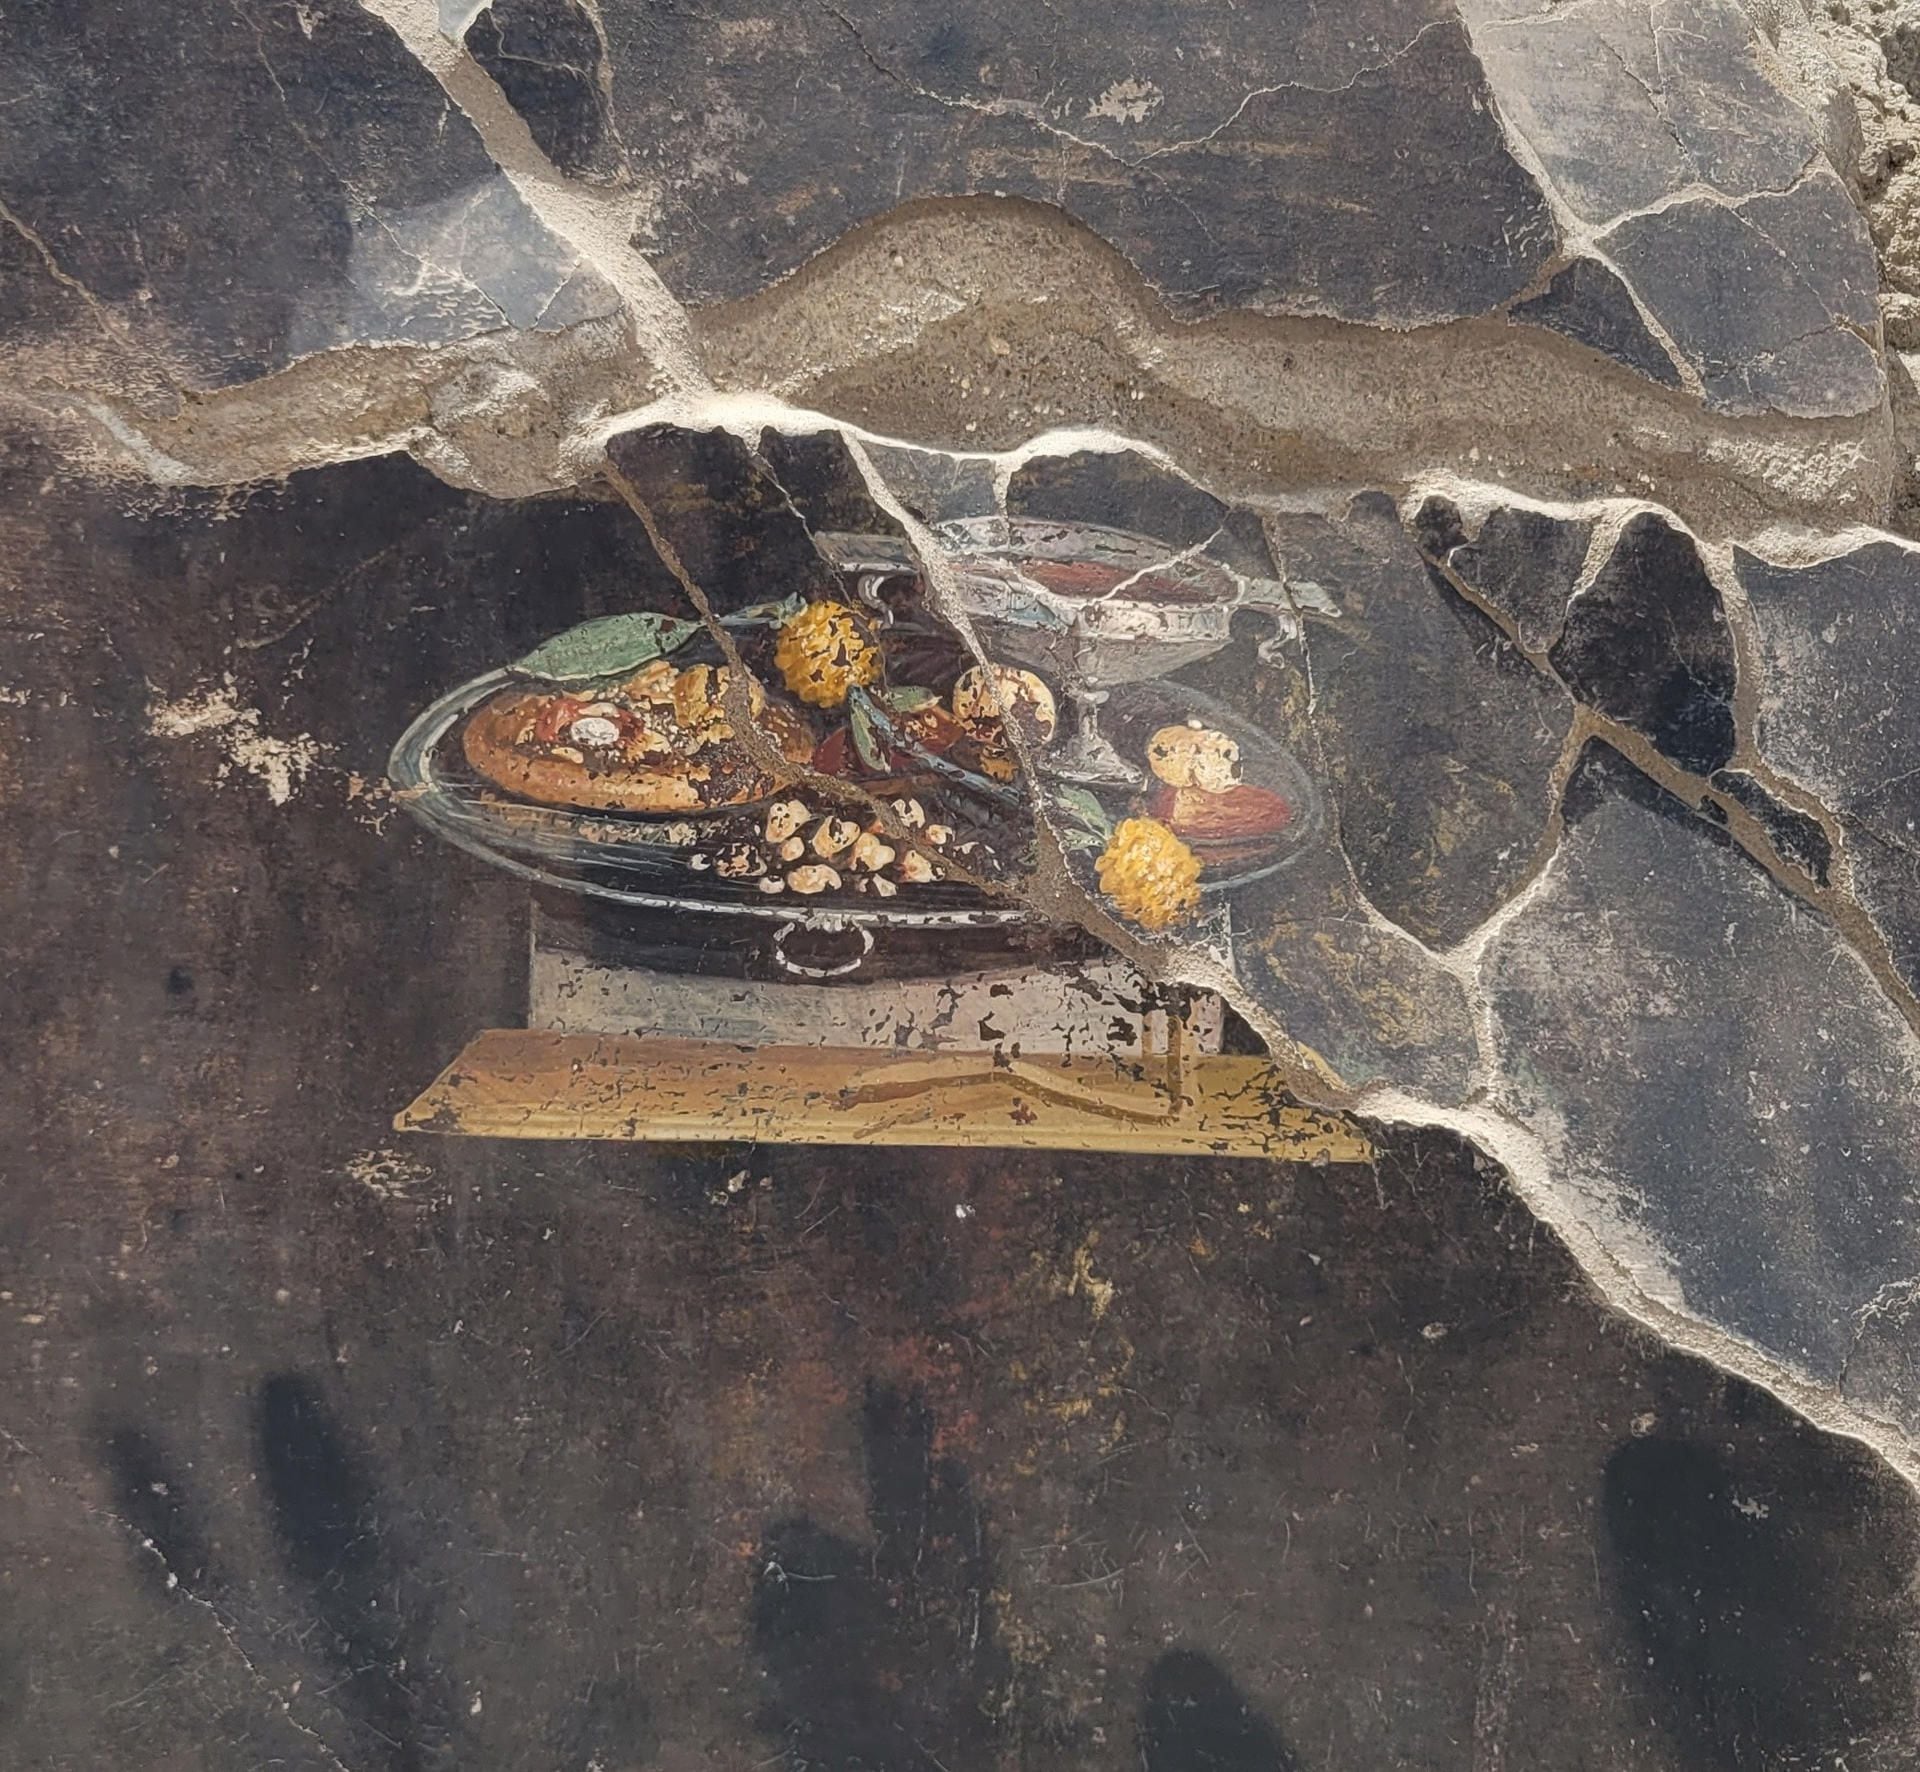 El análisis de un fresco que representa una naturaleza muerta descubierto recientemente en las nuevas excavaciones en Pompeya, la ciudad del sur de Italia destruida por el volcán Vesubio en el 79 d. C., han mostrado un sorprendente descubrimiento, pues aparece lo que podría ser un plato antepasado de la actual pizza, informó hoy el área arqueológica en una nota. EFE/Parque Arqueológico De Pompeya *****SOLO USO EDITORIAL/SOLO DISPONIBLE PARA ILUSTRAR LA NOTICIA QUE ACOMPAÑA (CRÉDITO OBLIGATORIO) *****
